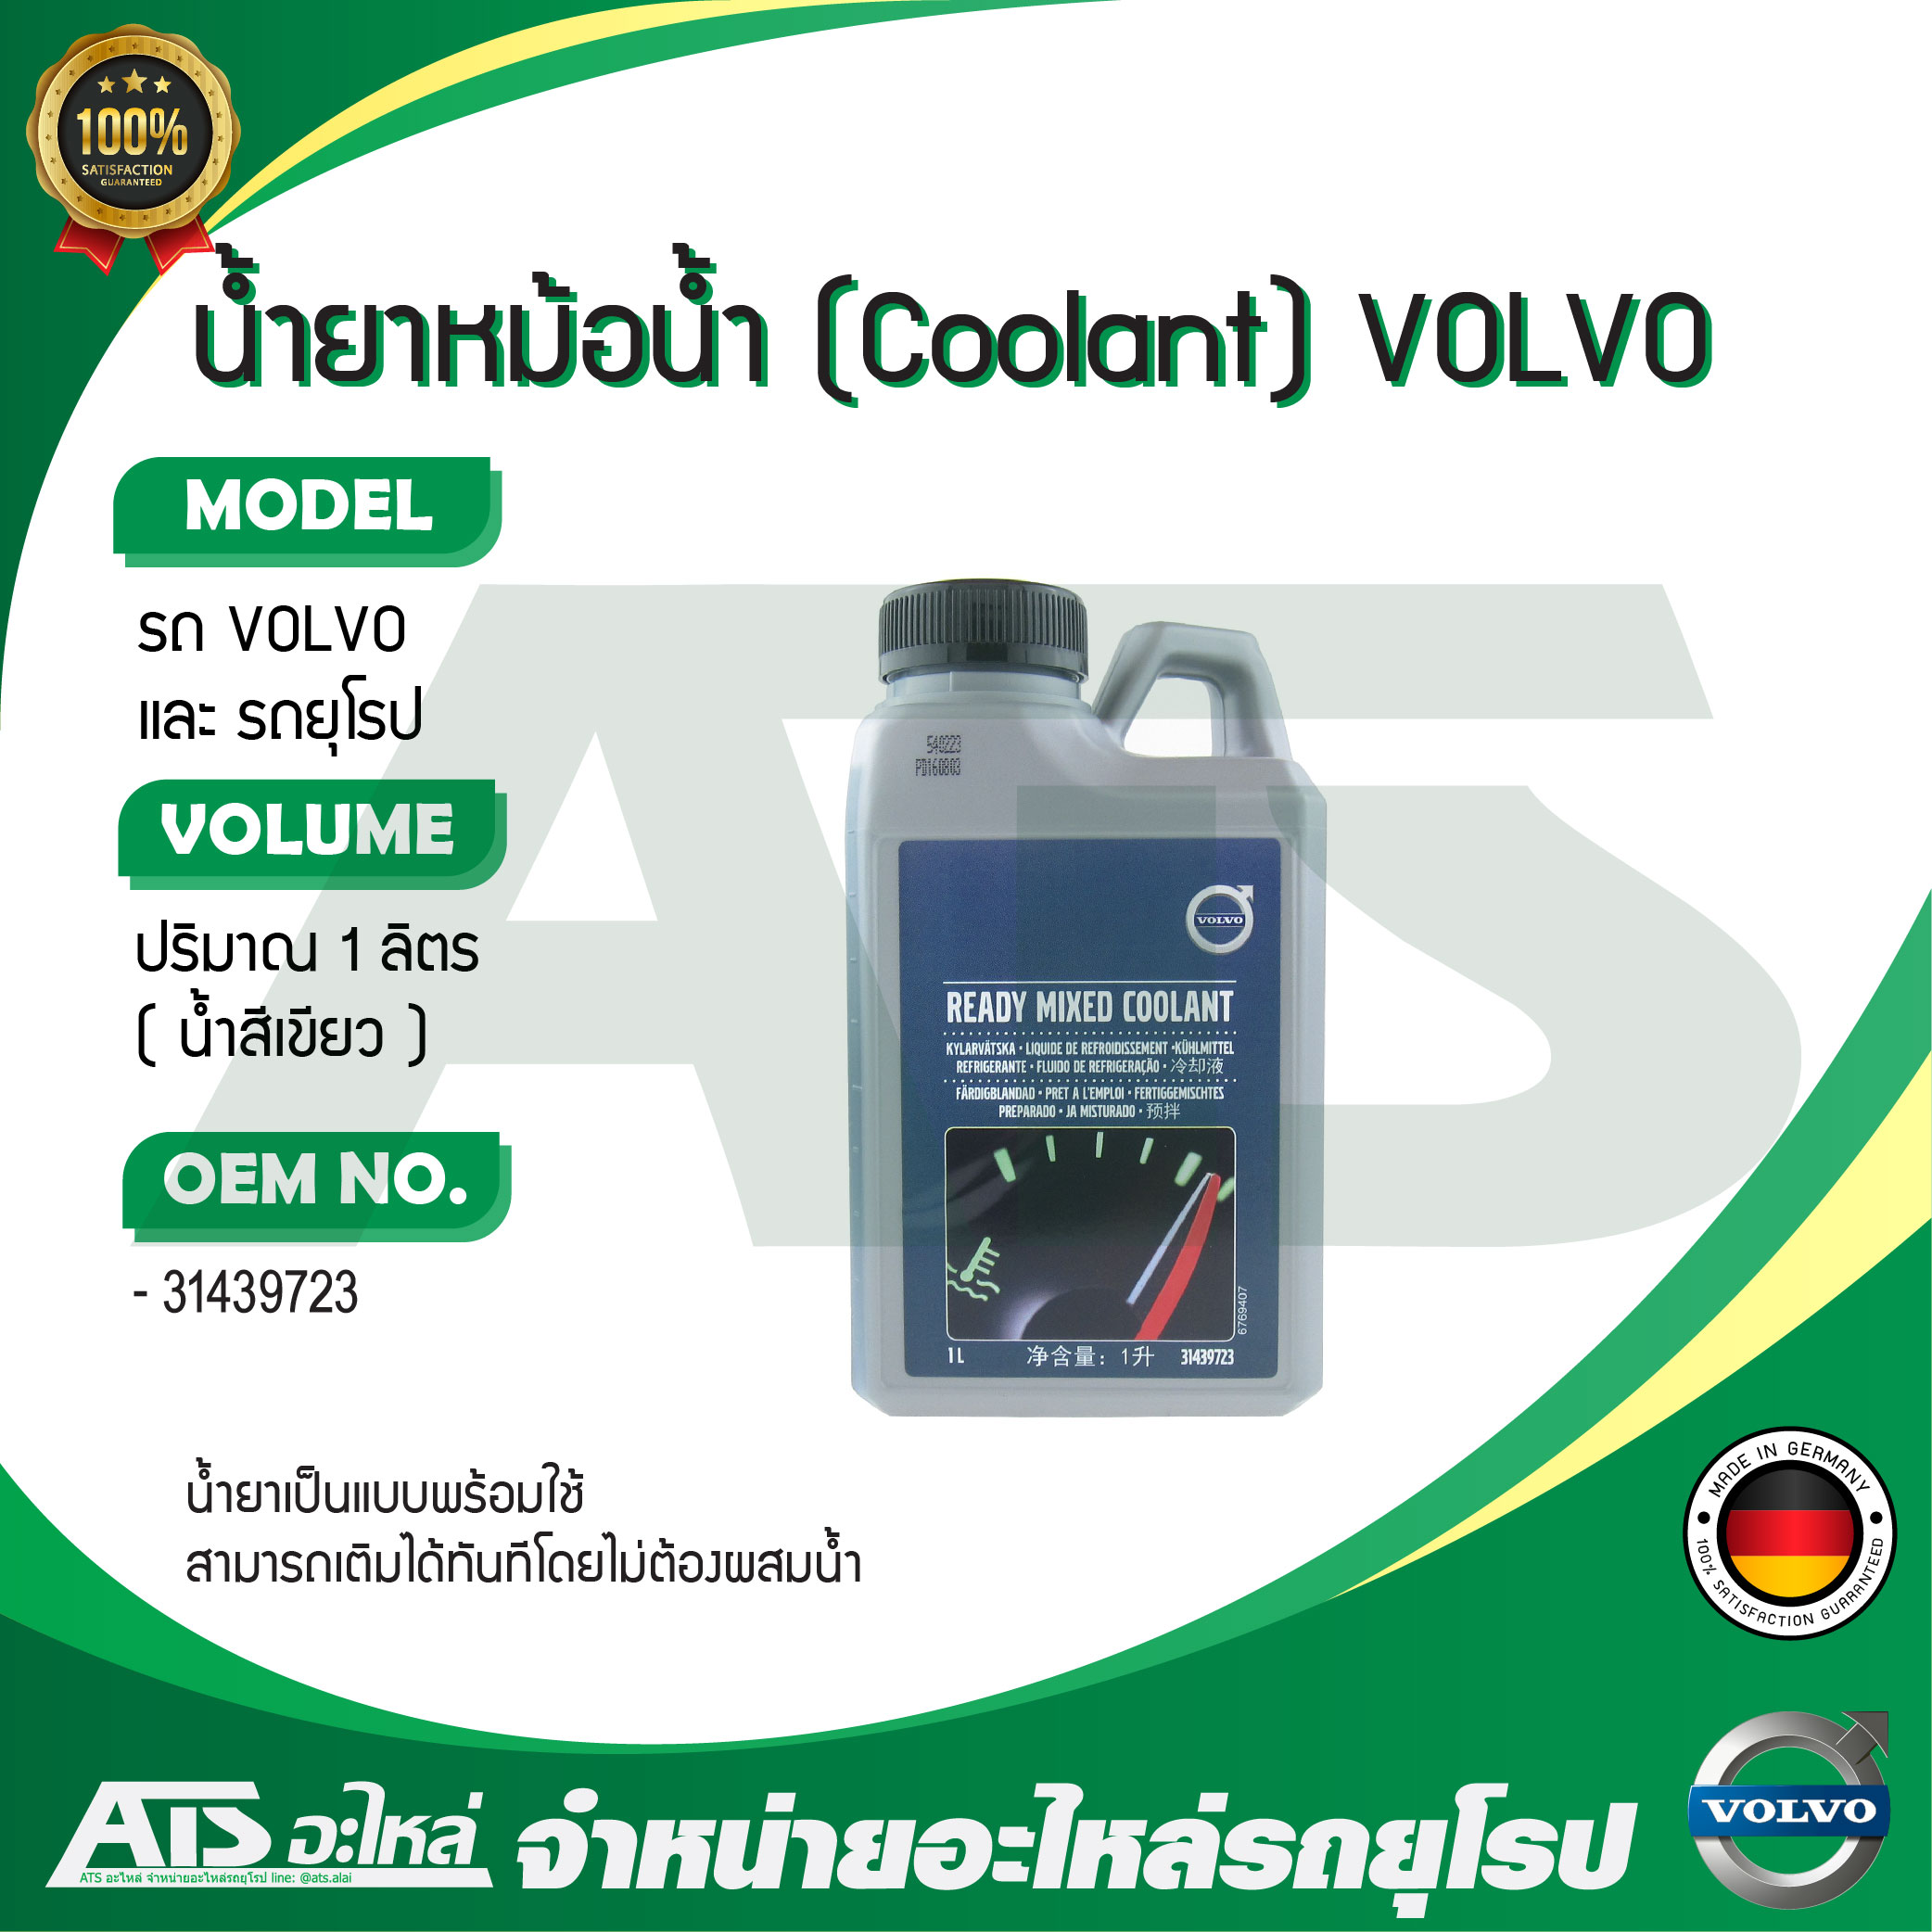 VOLVO น้ำยาหม้อน้ำ น้ำยาหล่อเย็น (Ready Mixed Coolant) ชนิดพร้อมใช้ ขนาด 1 ลิตร (OE No. 31439723) Made in Germany